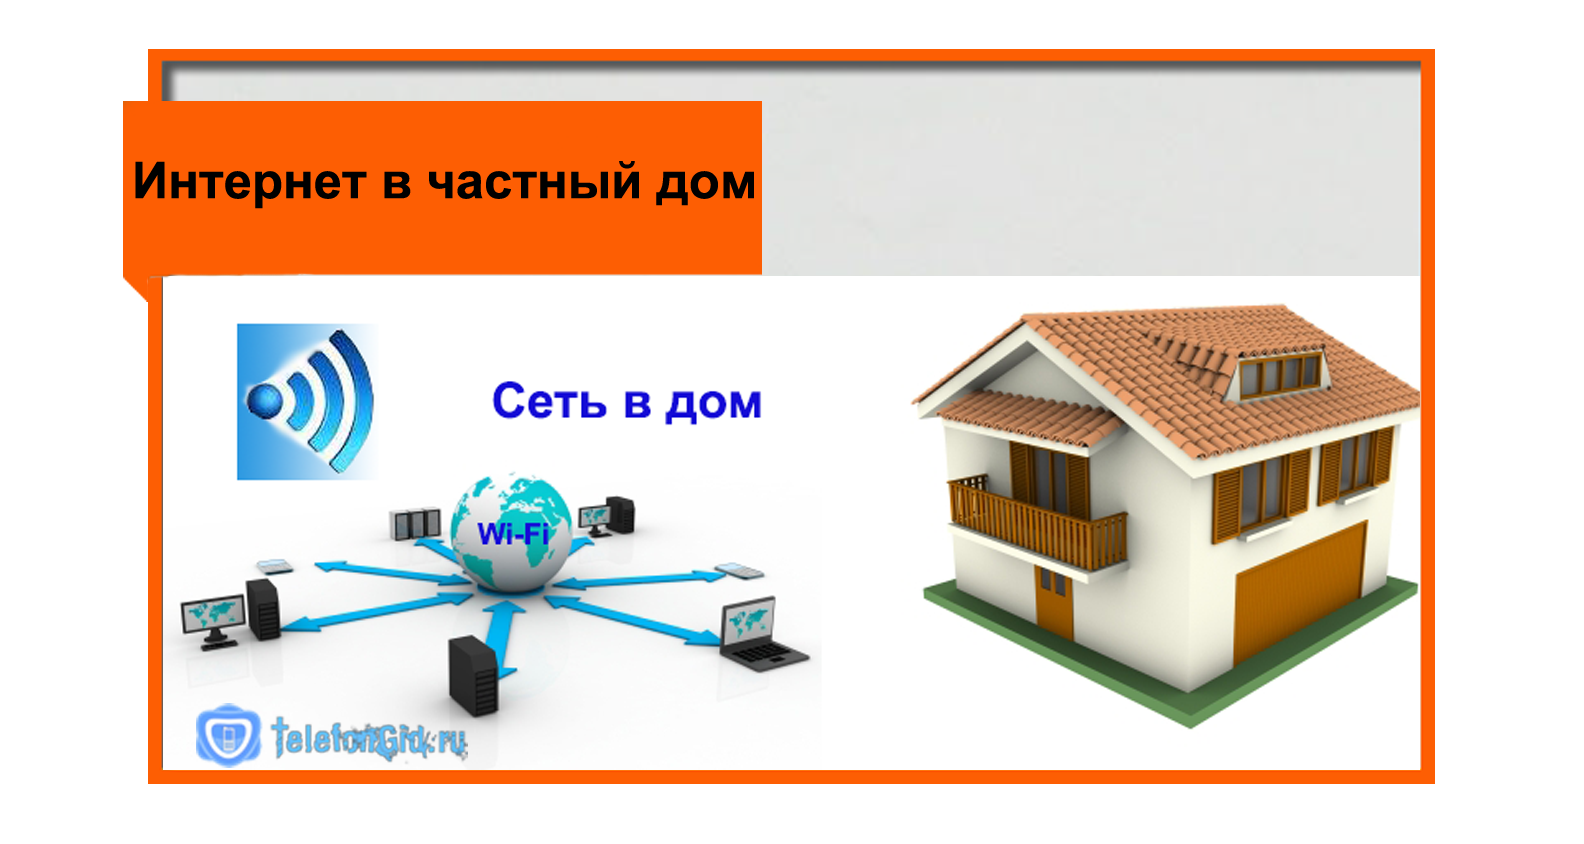 Интернет в доме в беларуси. Интернет в частный дом. Проводной интернет в частный дом. Подключить интернет в частный дом. Интернет и ТВ В частный дом.